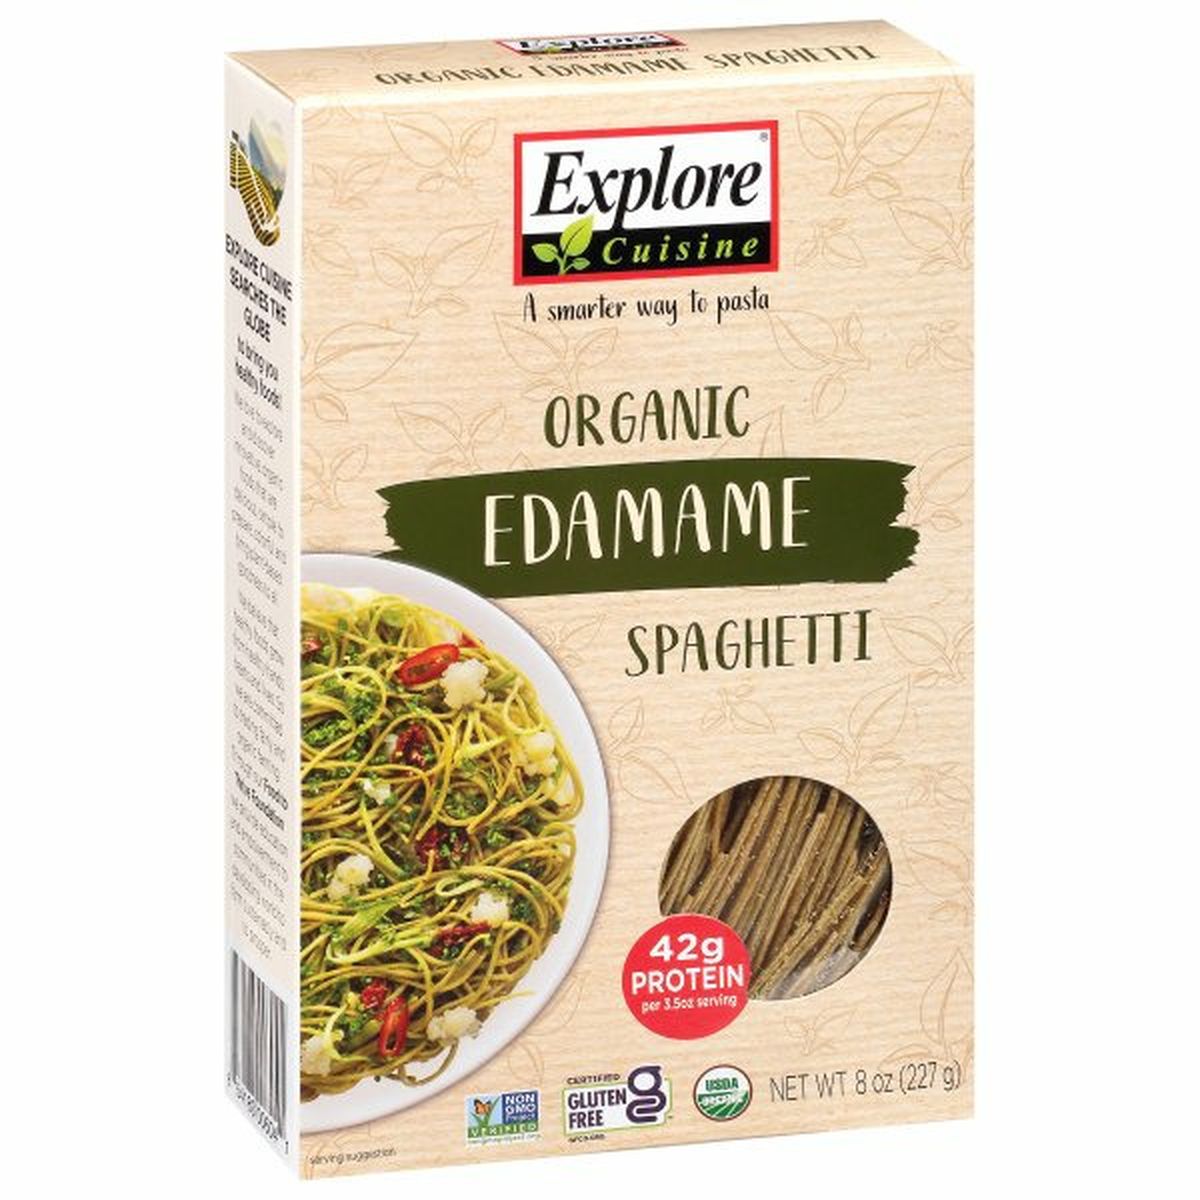 Calories in Explore Cuisine Spaghetti, Organic, Edamame